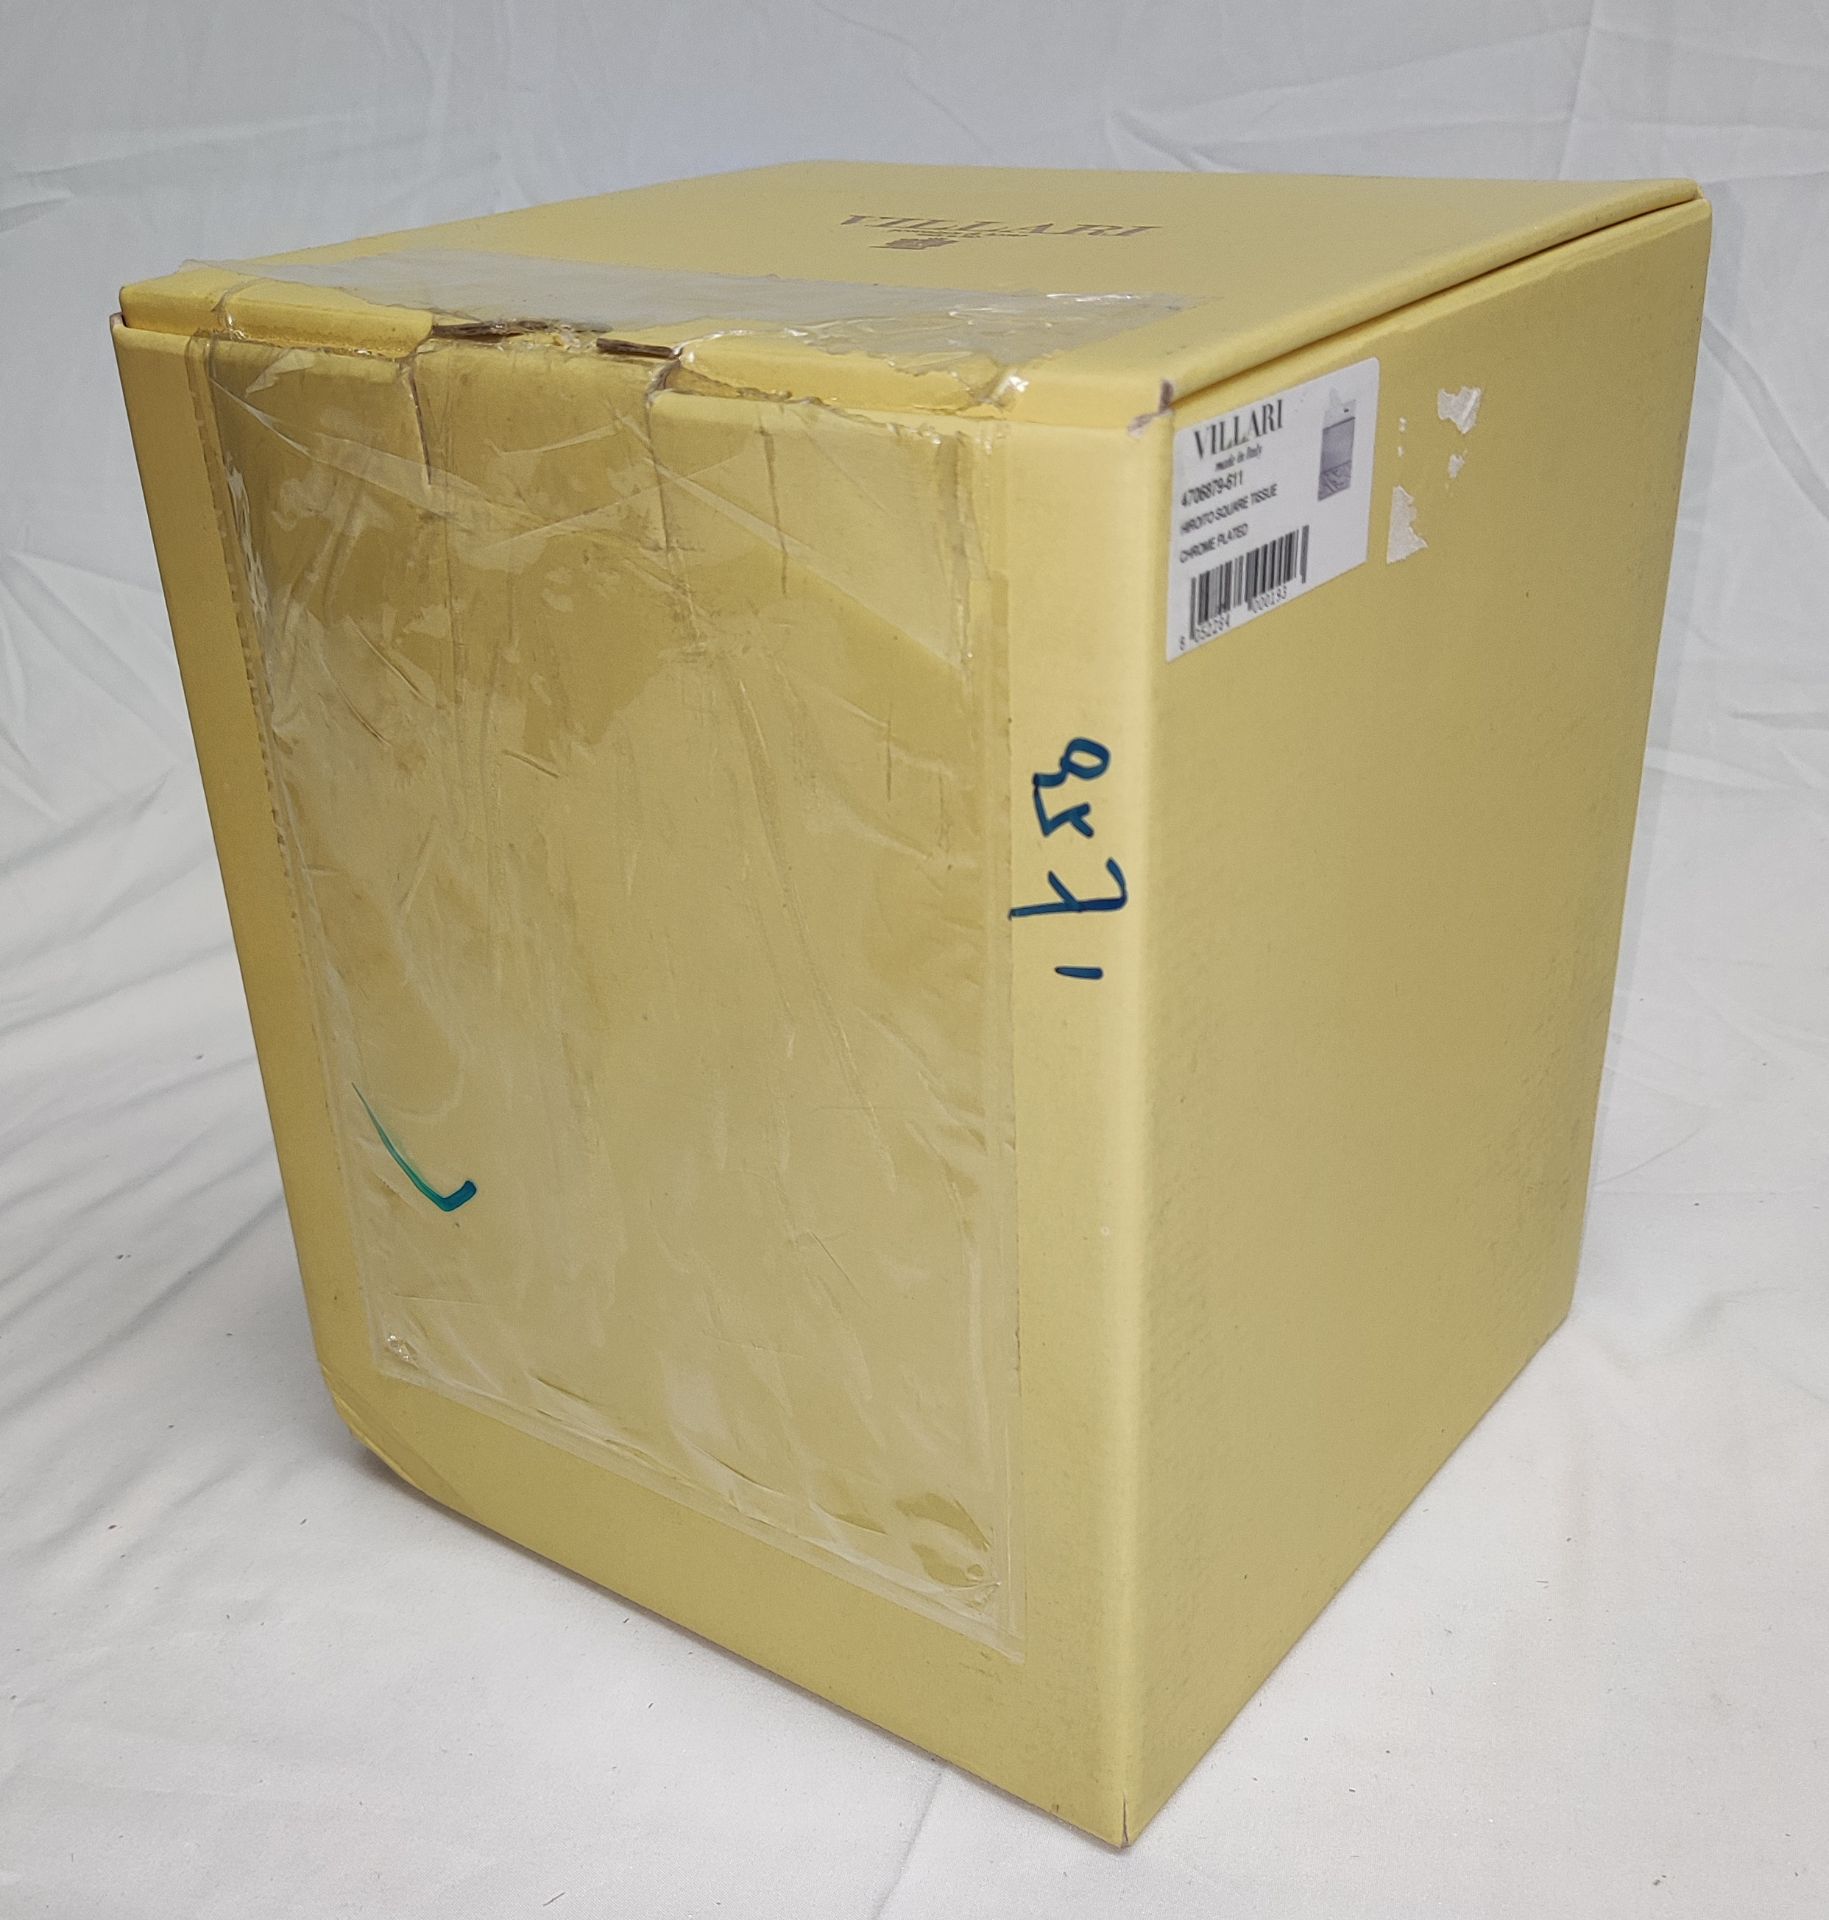 1 x VILLARI Hiroito Square Tissue Box - Chrome Plated - Boxed - Original RRP £529 - Ref: 6125321/ - Image 14 of 17